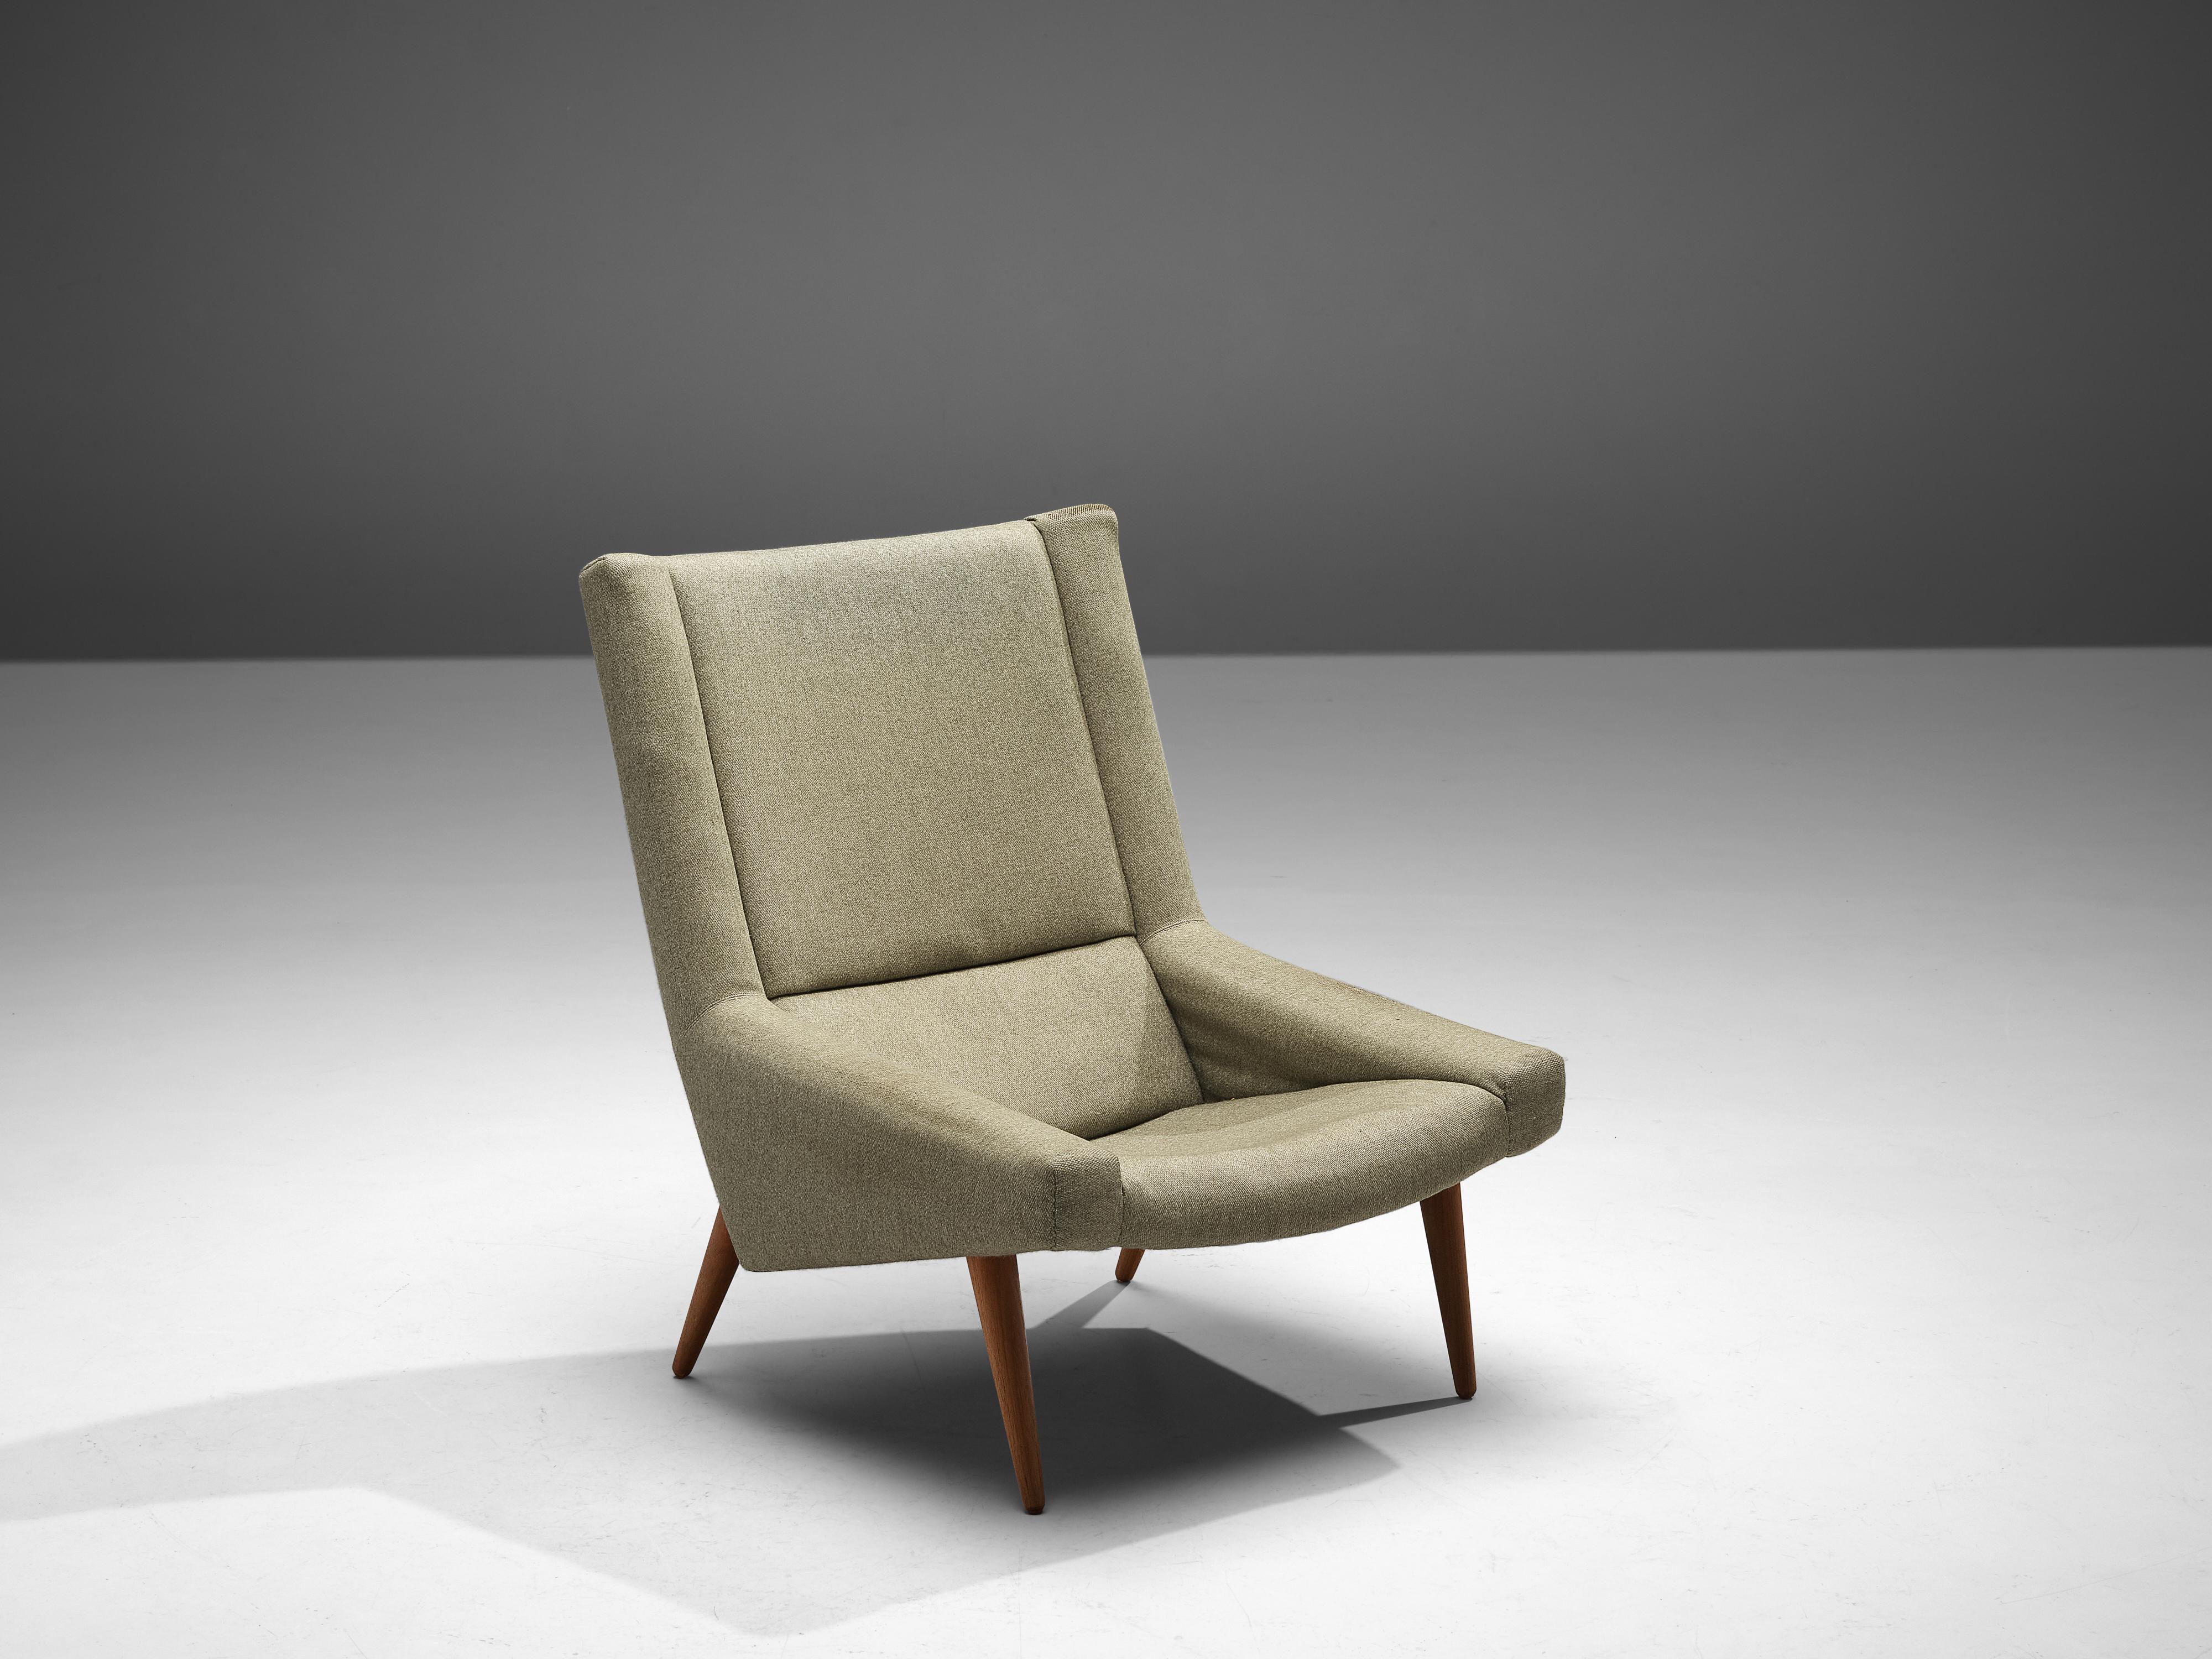 Illum Wikkelsø, chaise longue, revêtement en tissu, teck Danemark, années 1950

Chaise longue confortable du designer danois Illum Wikkelsø. La forme de la chaise est caractérisée par un dossier haut qui se prolonge par des accoudoirs bas et